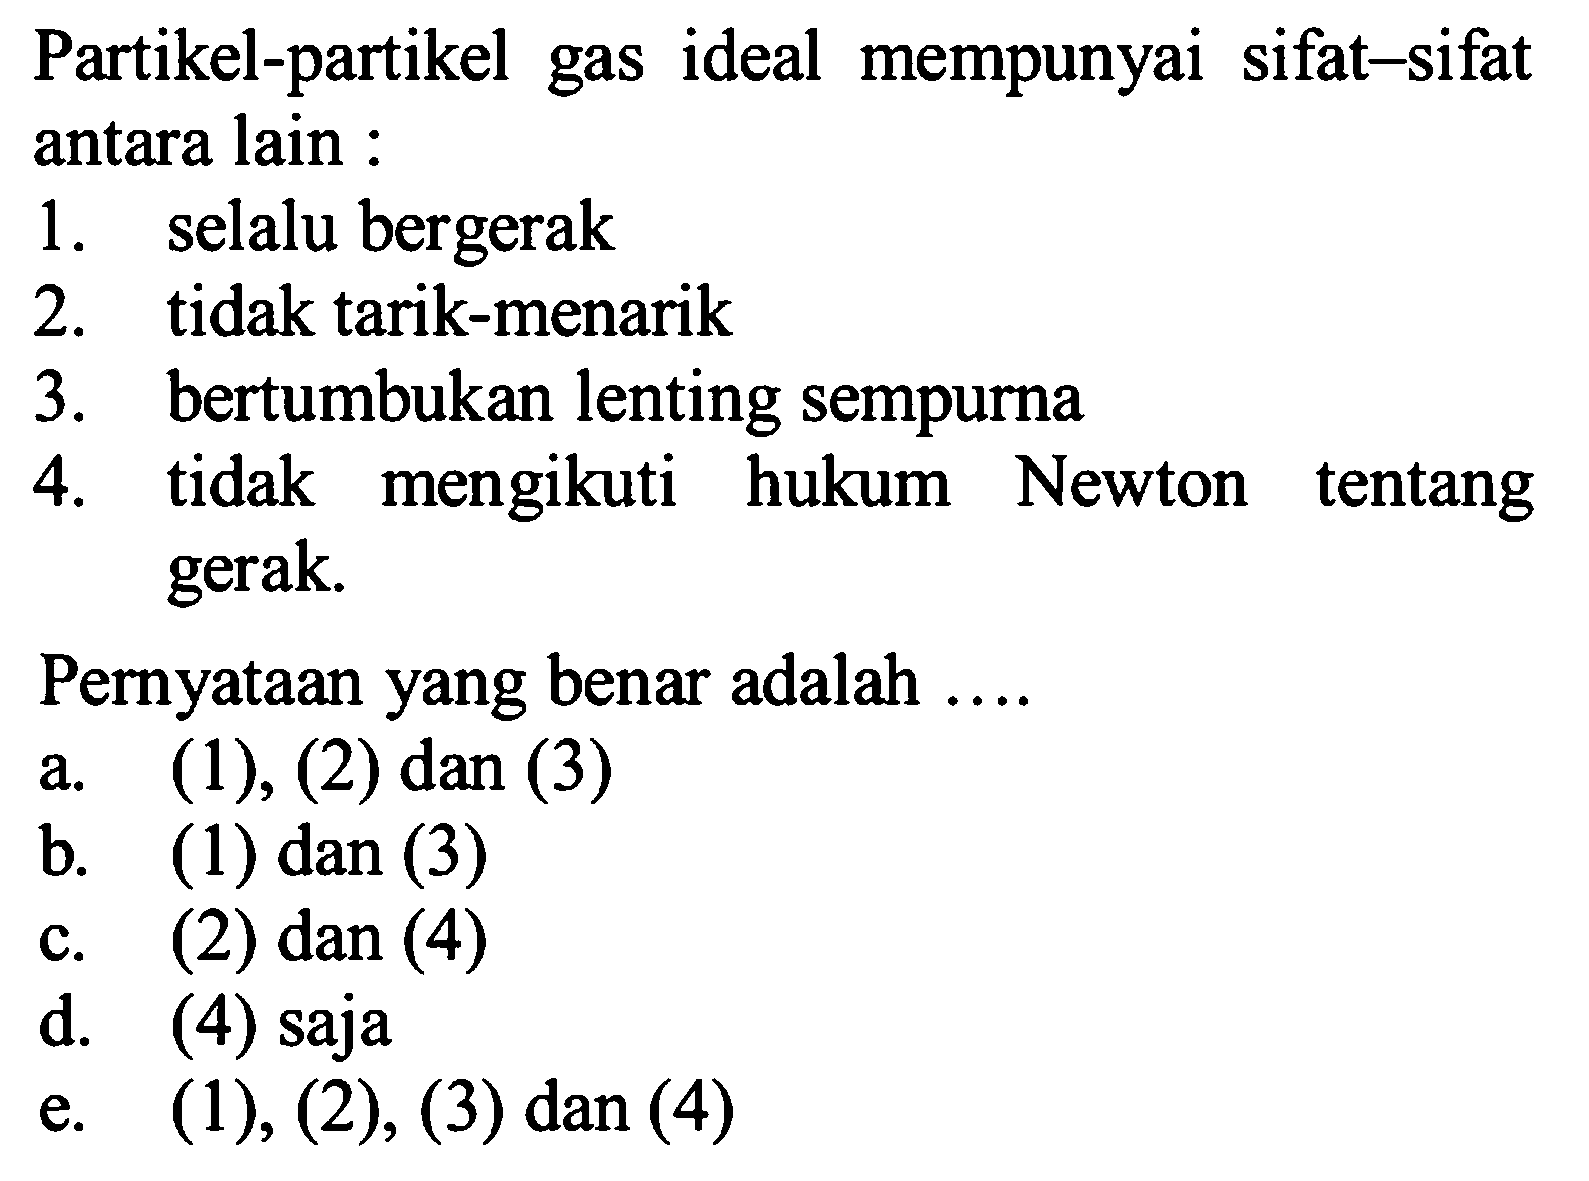 Partikel-partikel gas ideal mempunyai sifat-sifat antara lain : 1. selalu bergerak 2. tidak tarik-menarik 3. bertumbukan lenting sempurna 4. tidak mengikuti hukum Newton tentang gerak. Pernyataan yang benar adalah .... a. (1), (2) dan (3) b. (1) dan (3) c. (2) dan (4) d. (4) saja e. (1), (2), (3) dan (4) 